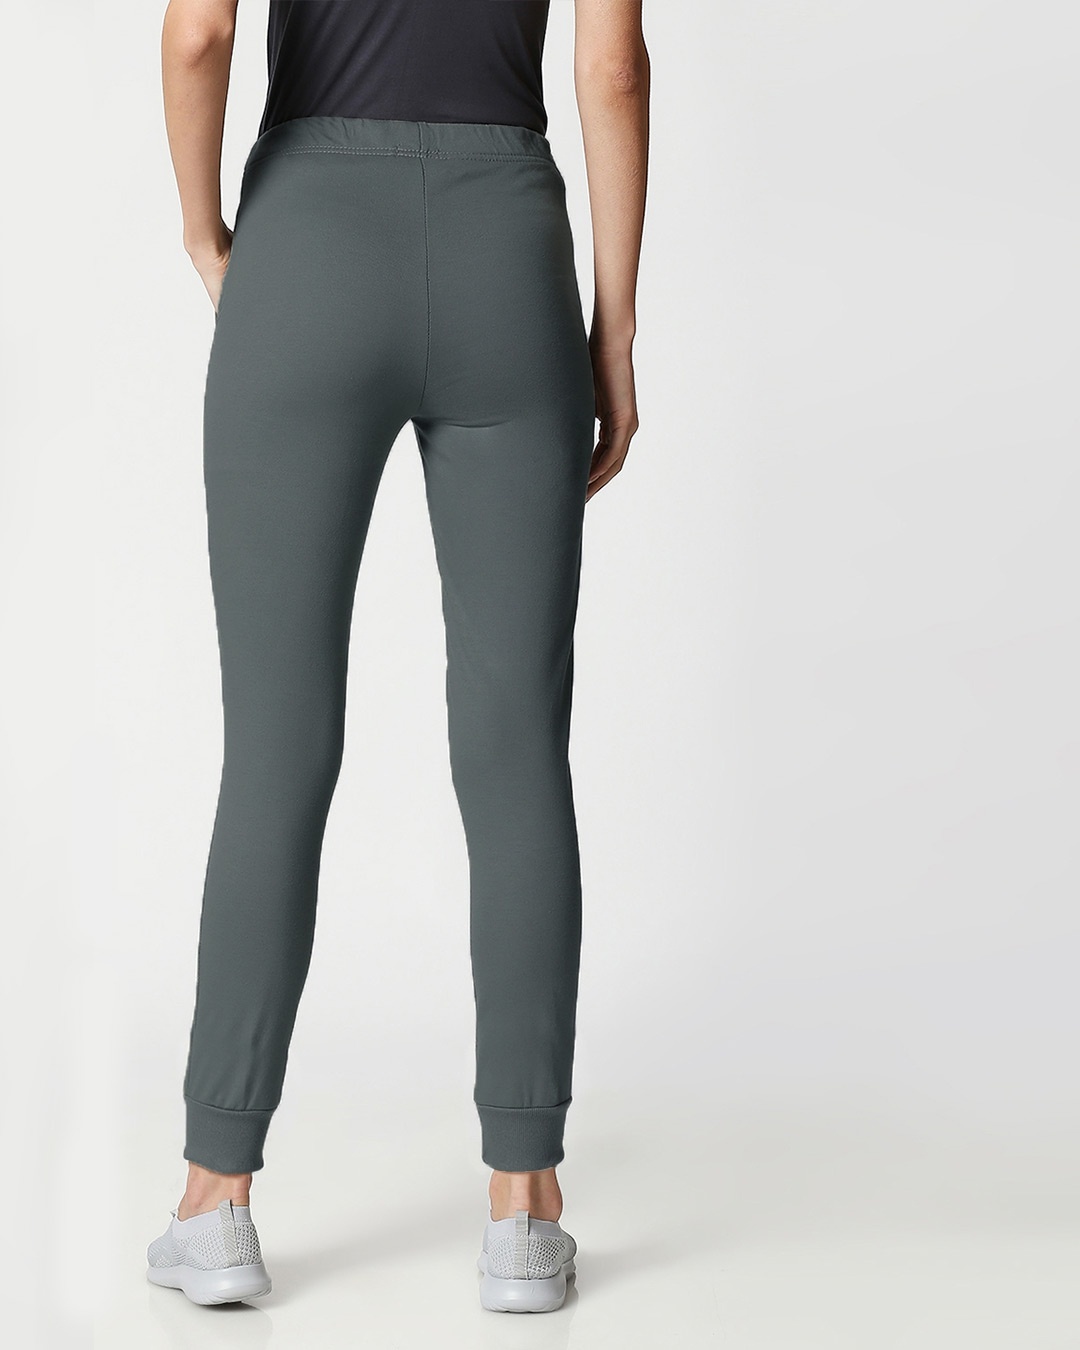 Shop Nimbus Grey Casual Jogger Pants-Design